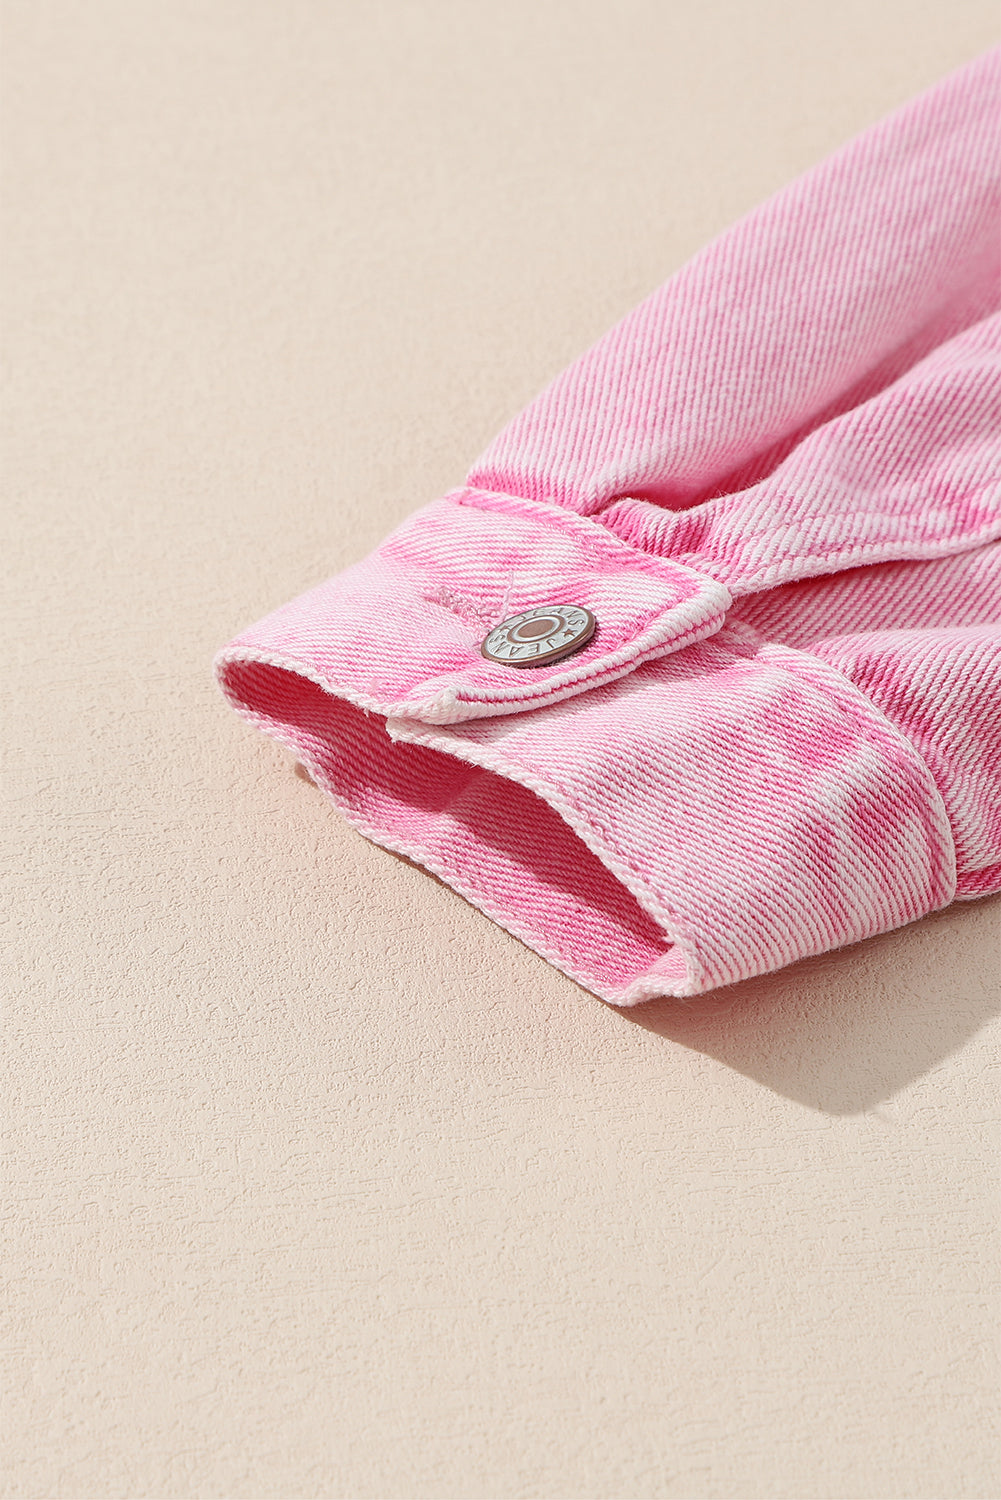 Veste en jean rose à poches cloutées et rivets